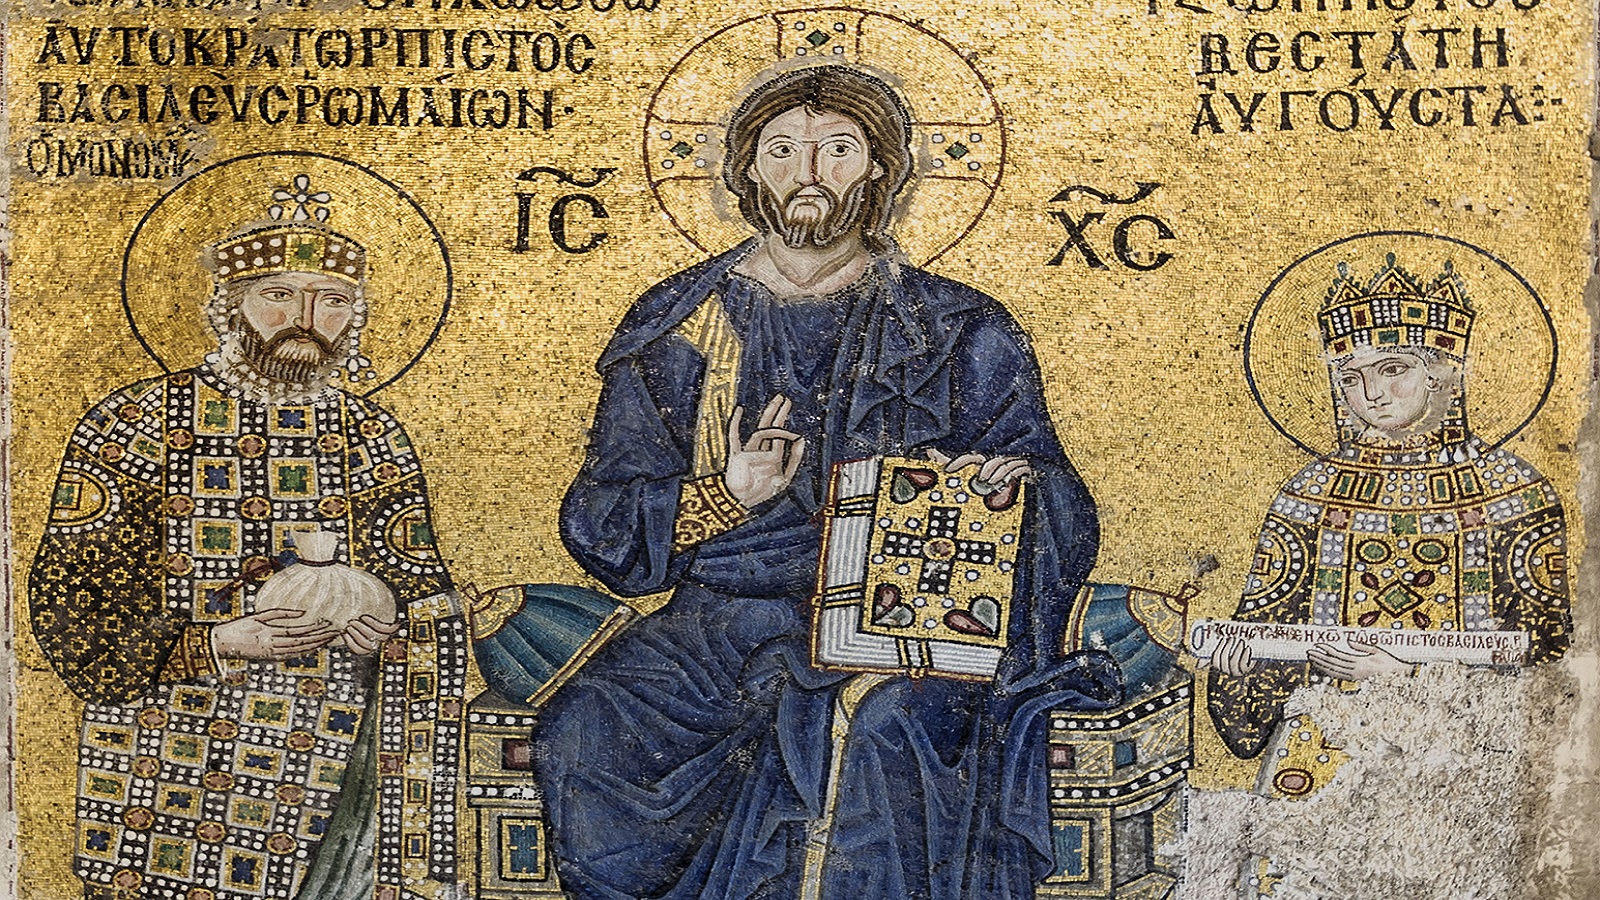  الإمبراطور قسطنطين التاسع مونوماخوس والإمبراطورة زوي بورفيريوجينيتا، القرن 11